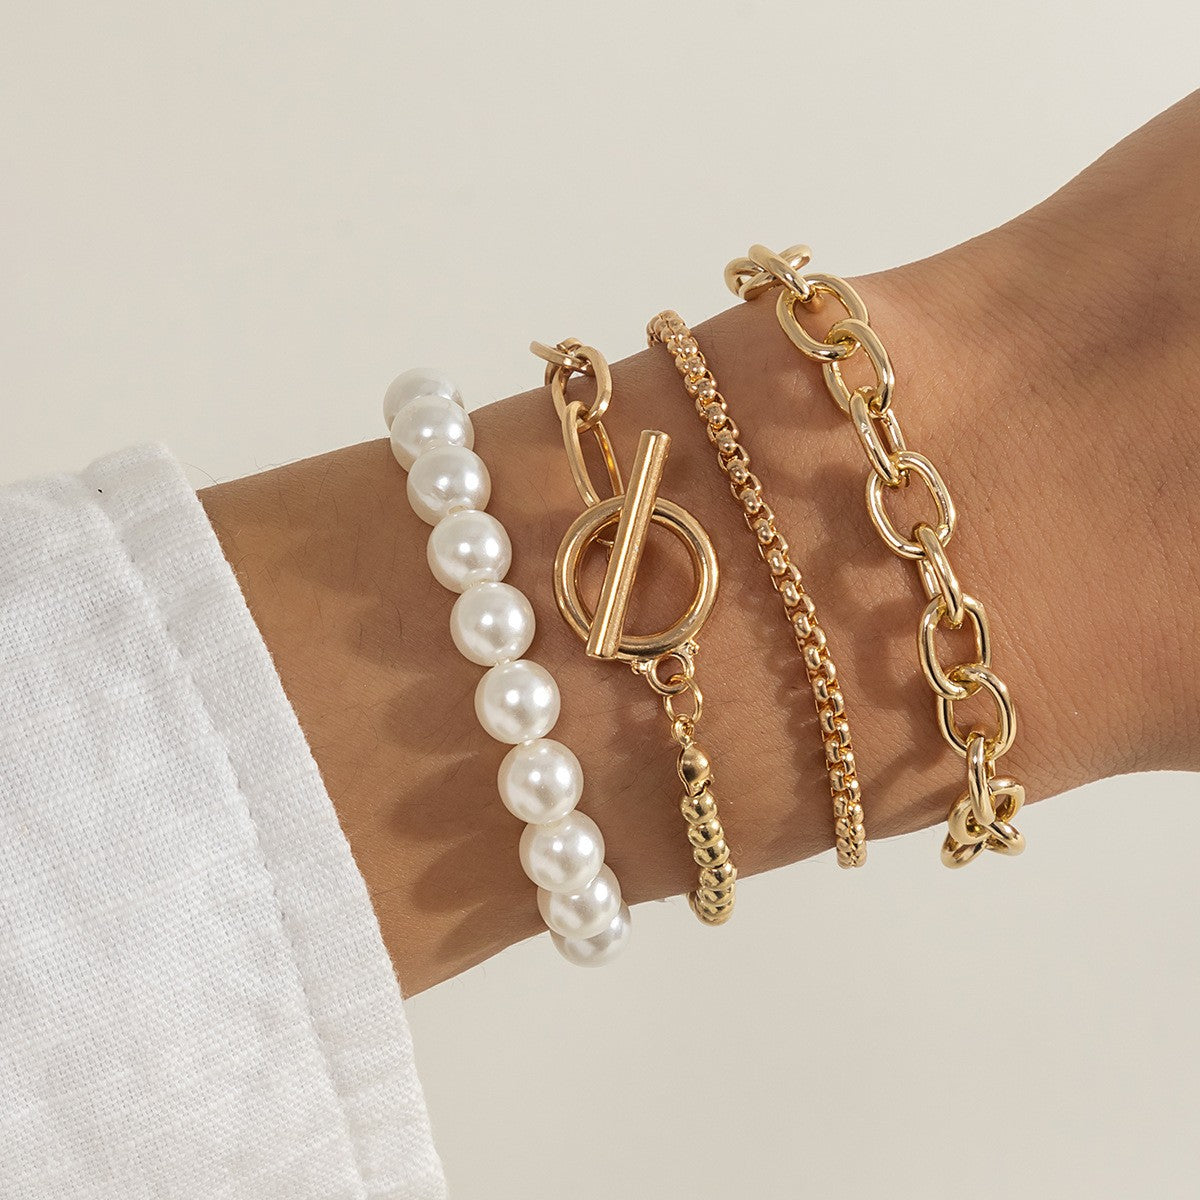 Bohemian Fashion Hand Jewelry Multilayer Chain Bracelets - Niki Ice Jewelry 